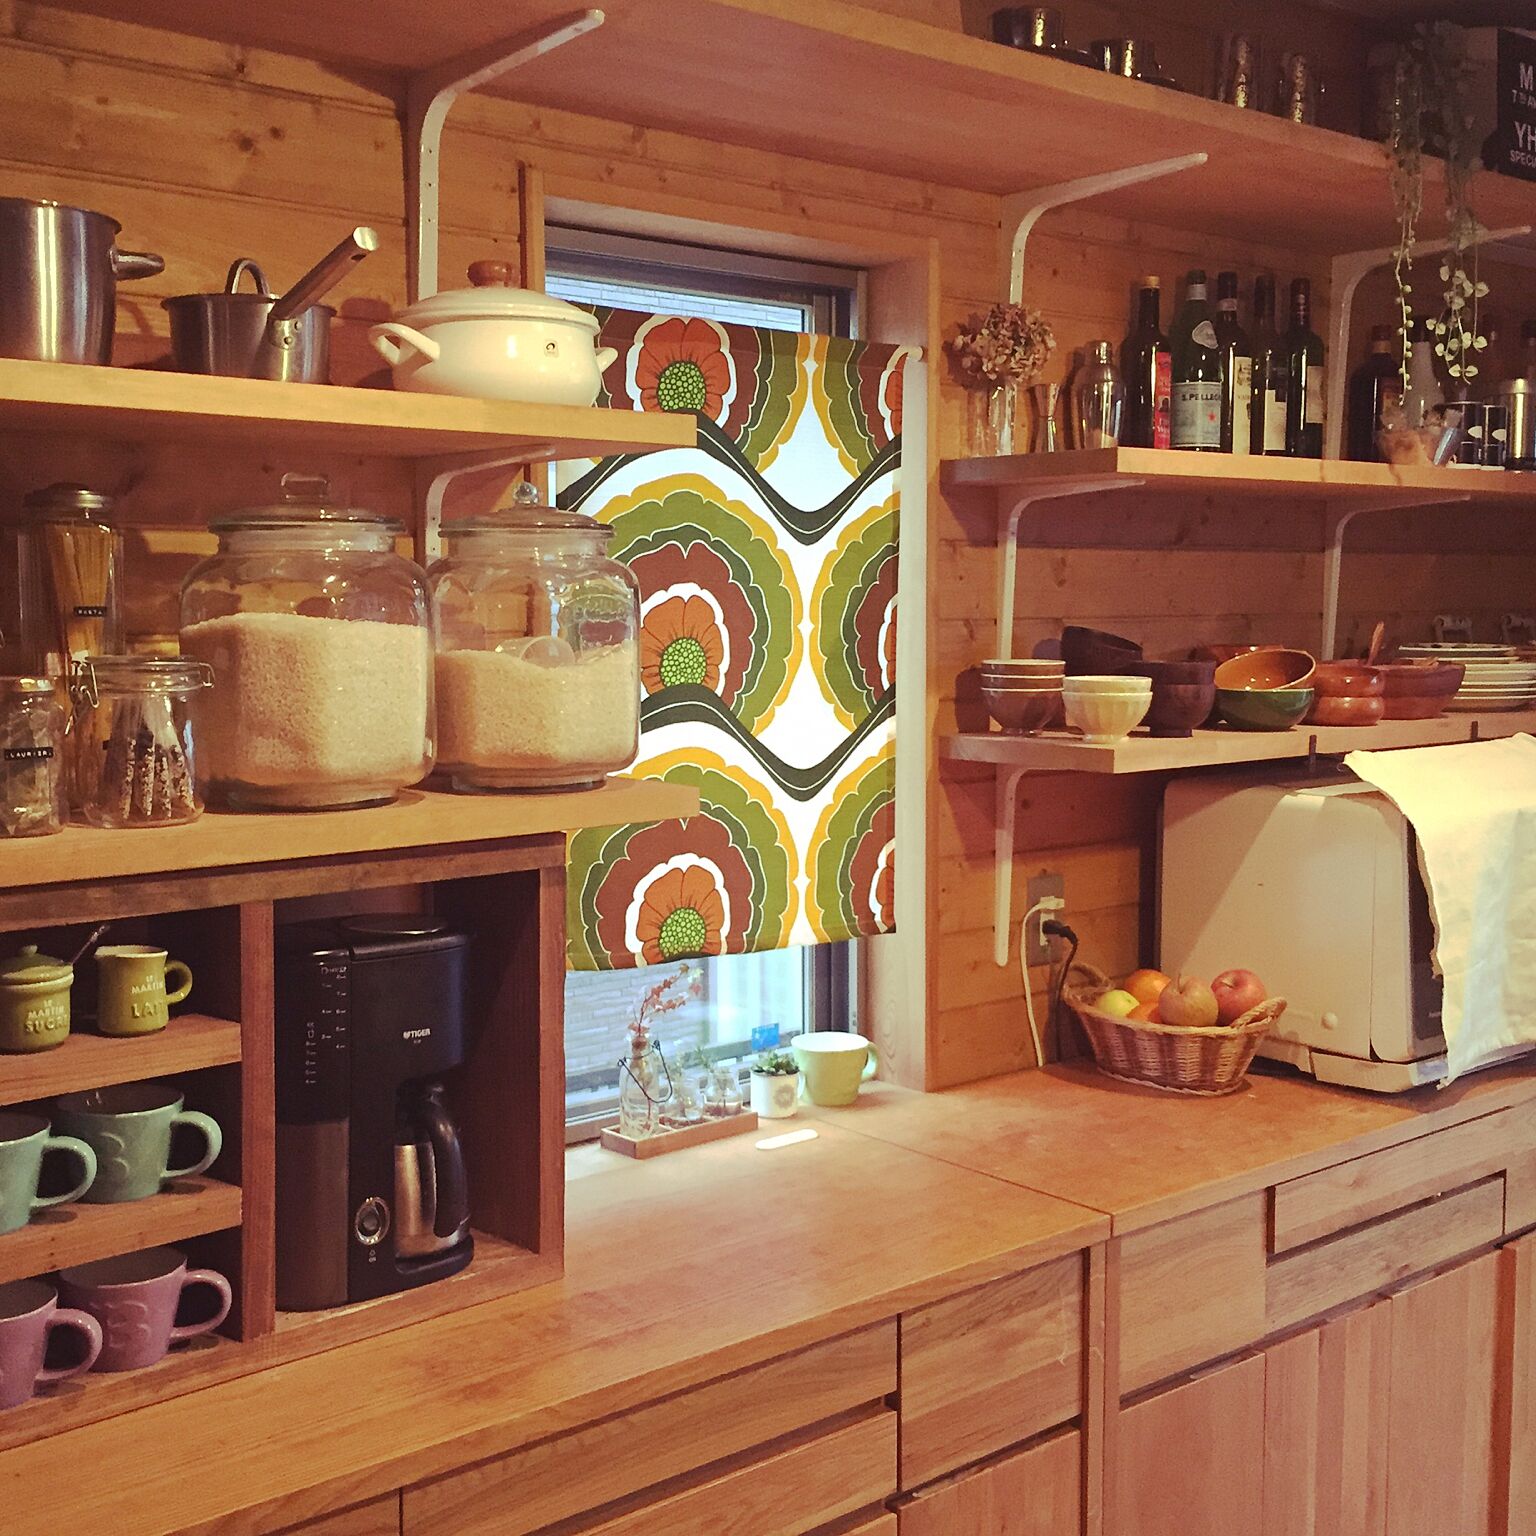 食器や調味料の定位置を作って使ったら戻すように心がけると、いつもきれいなキッチンが保てます。ガラスで食料品を入れる容器を統一しているのもいいですね。